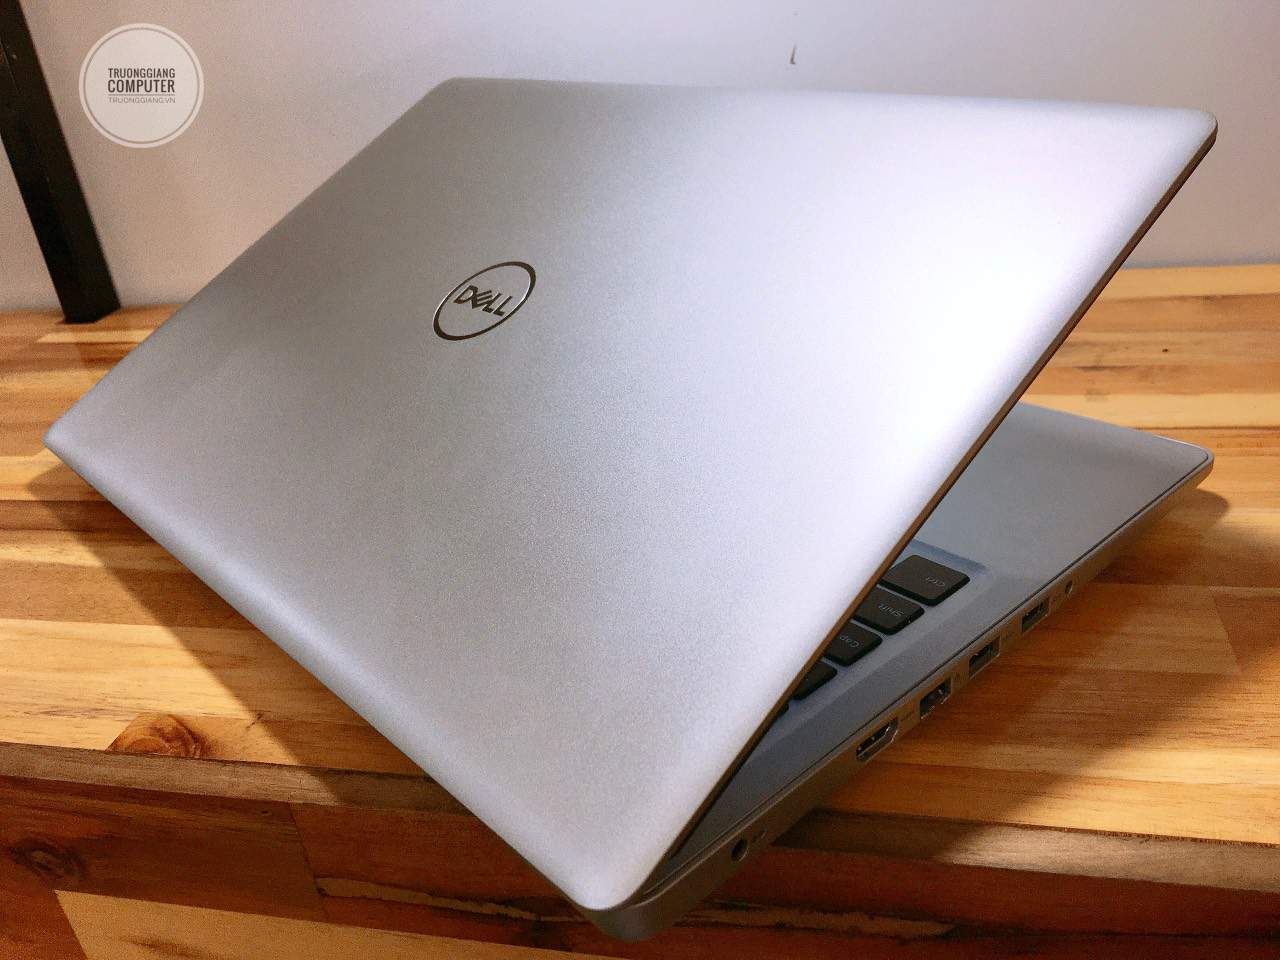 Thiết kế sang trọng của laptop Dell inspiron 5570 i7-8550U 